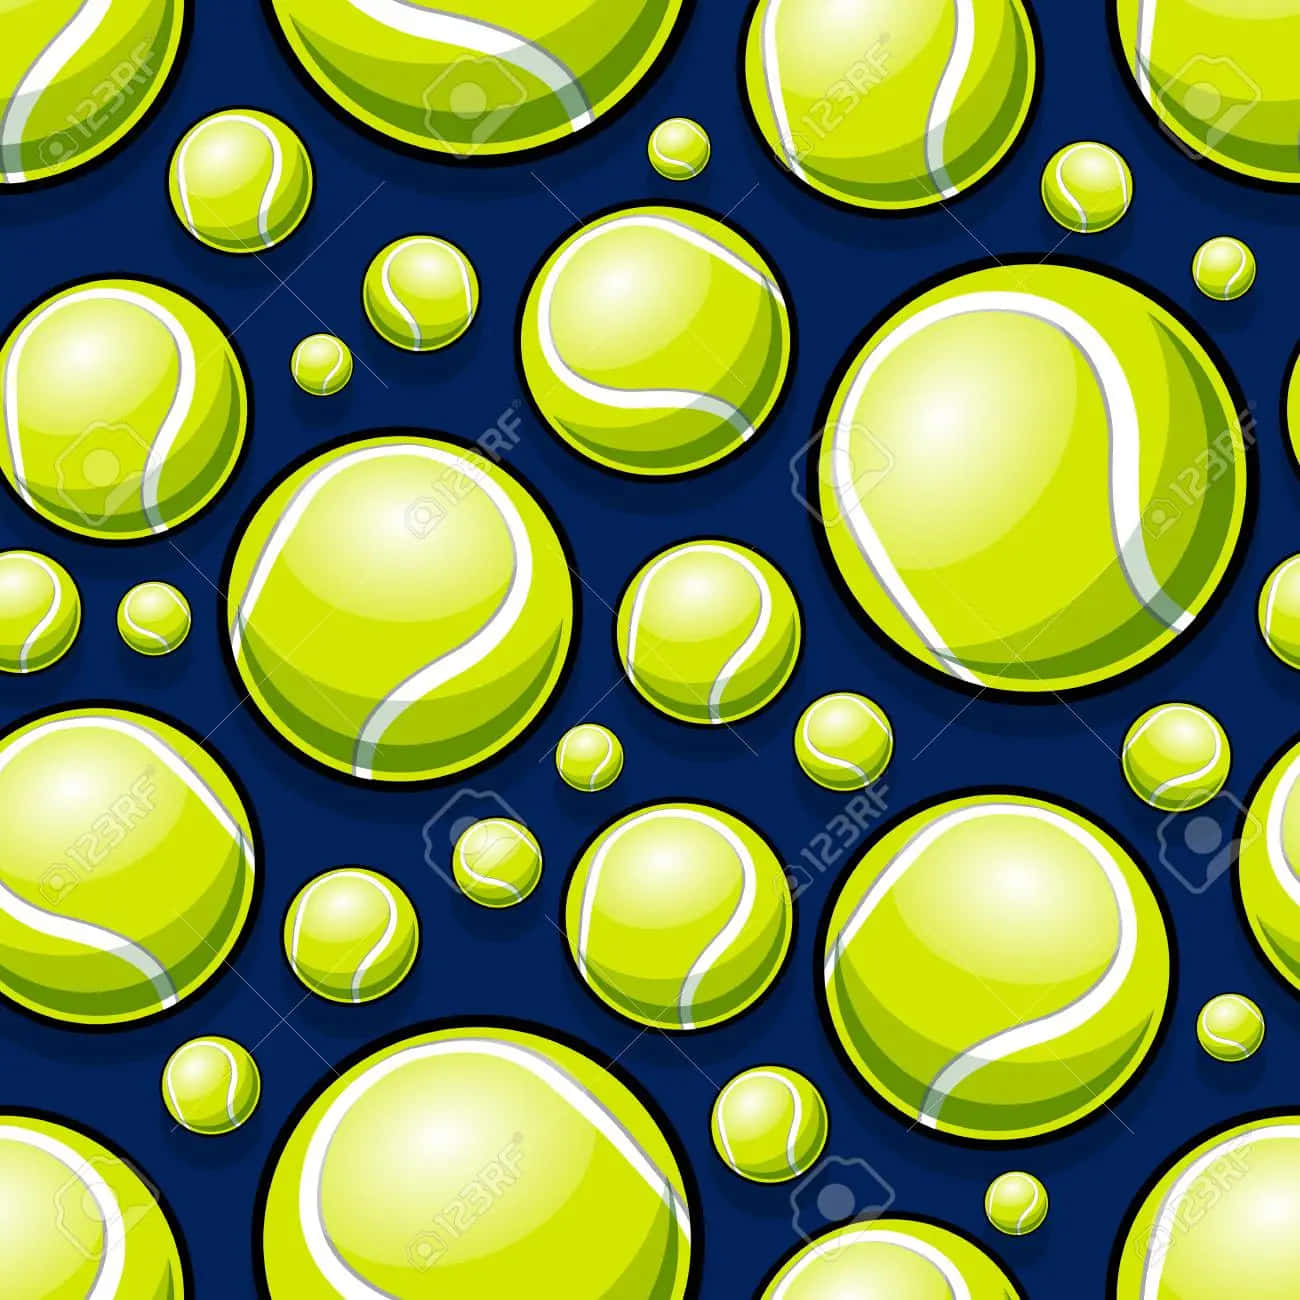 Unapelota De Tenis En La Cancha Fondo de pantalla